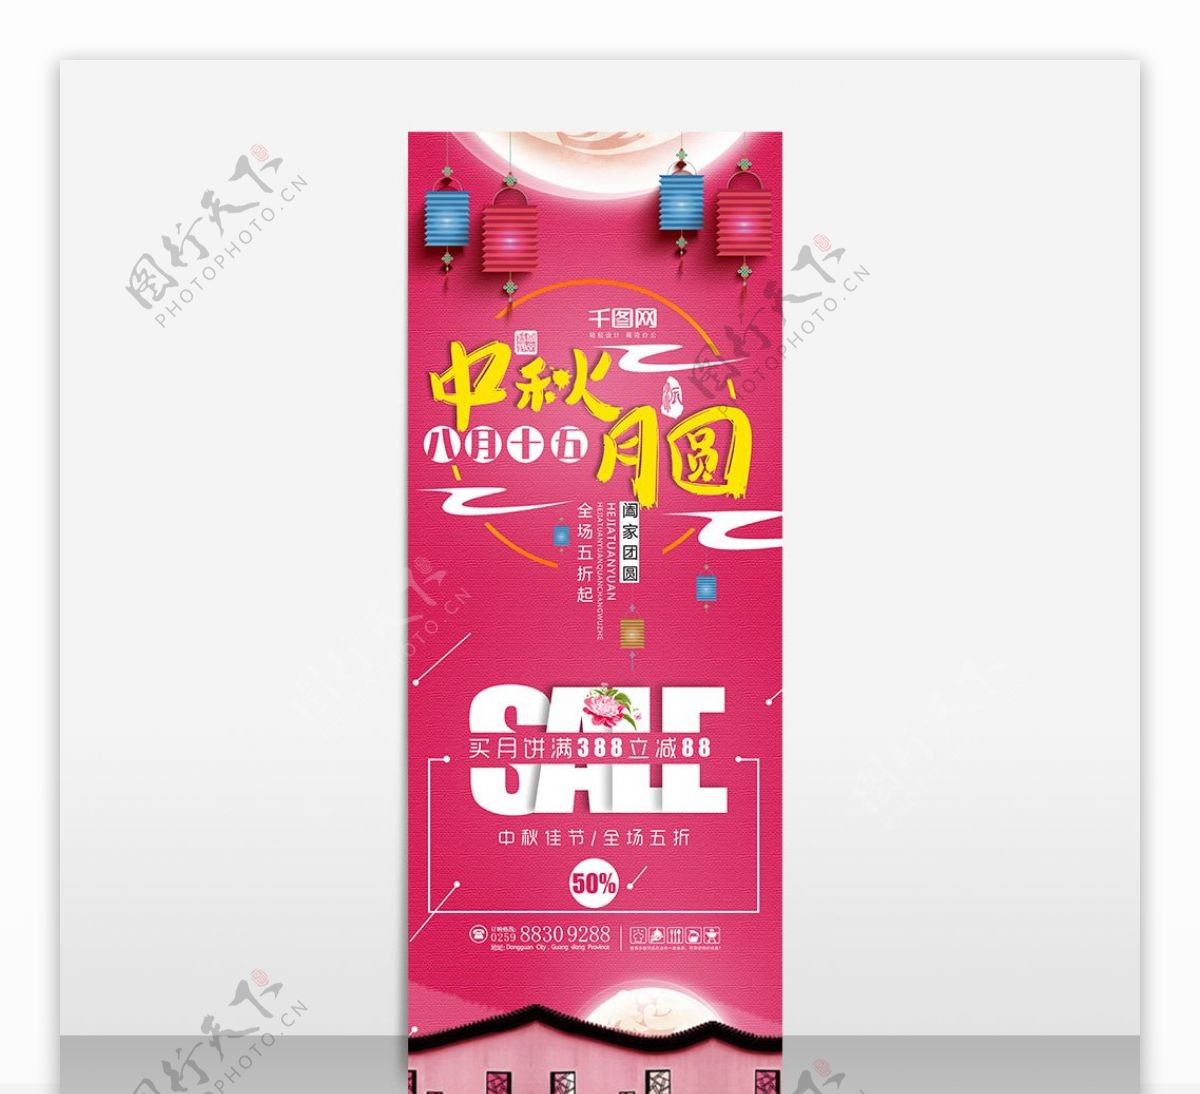 粉红色中秋节海报设计